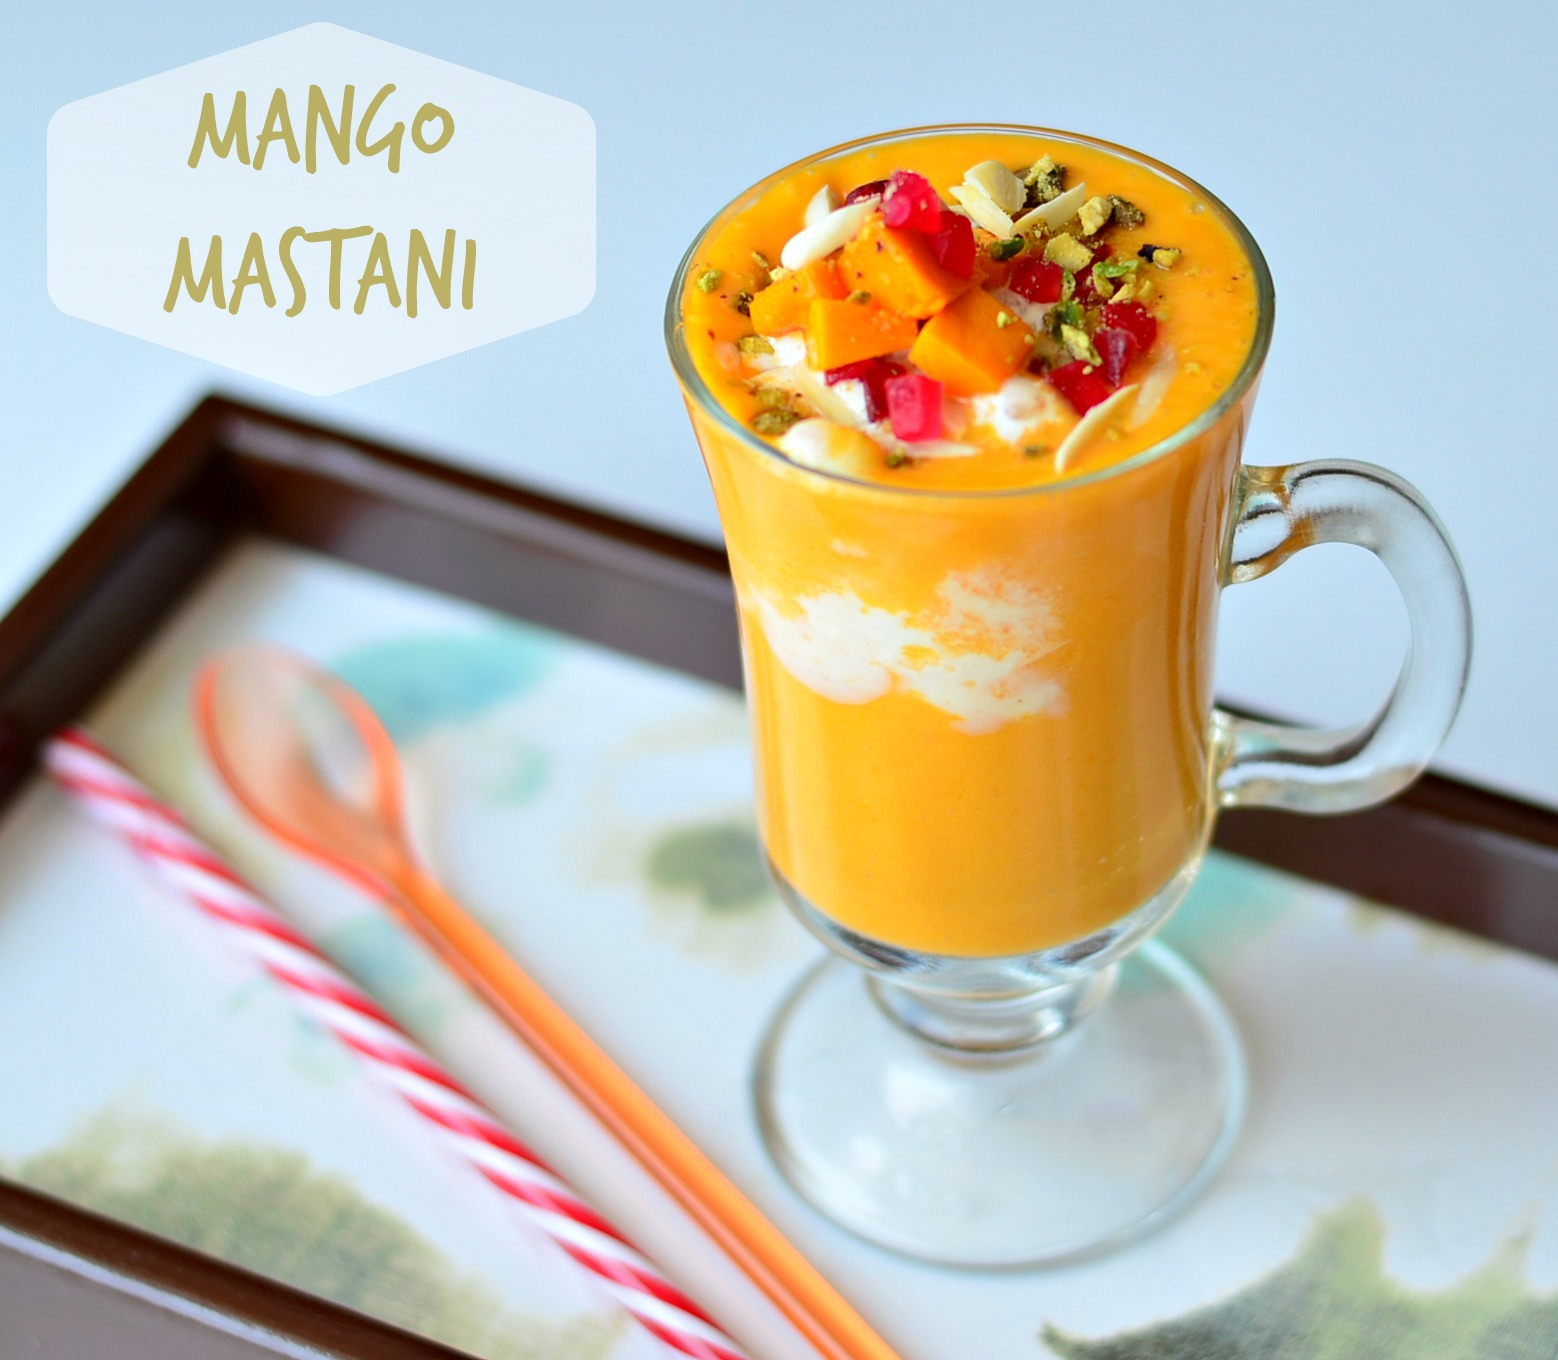 Mango Mastani